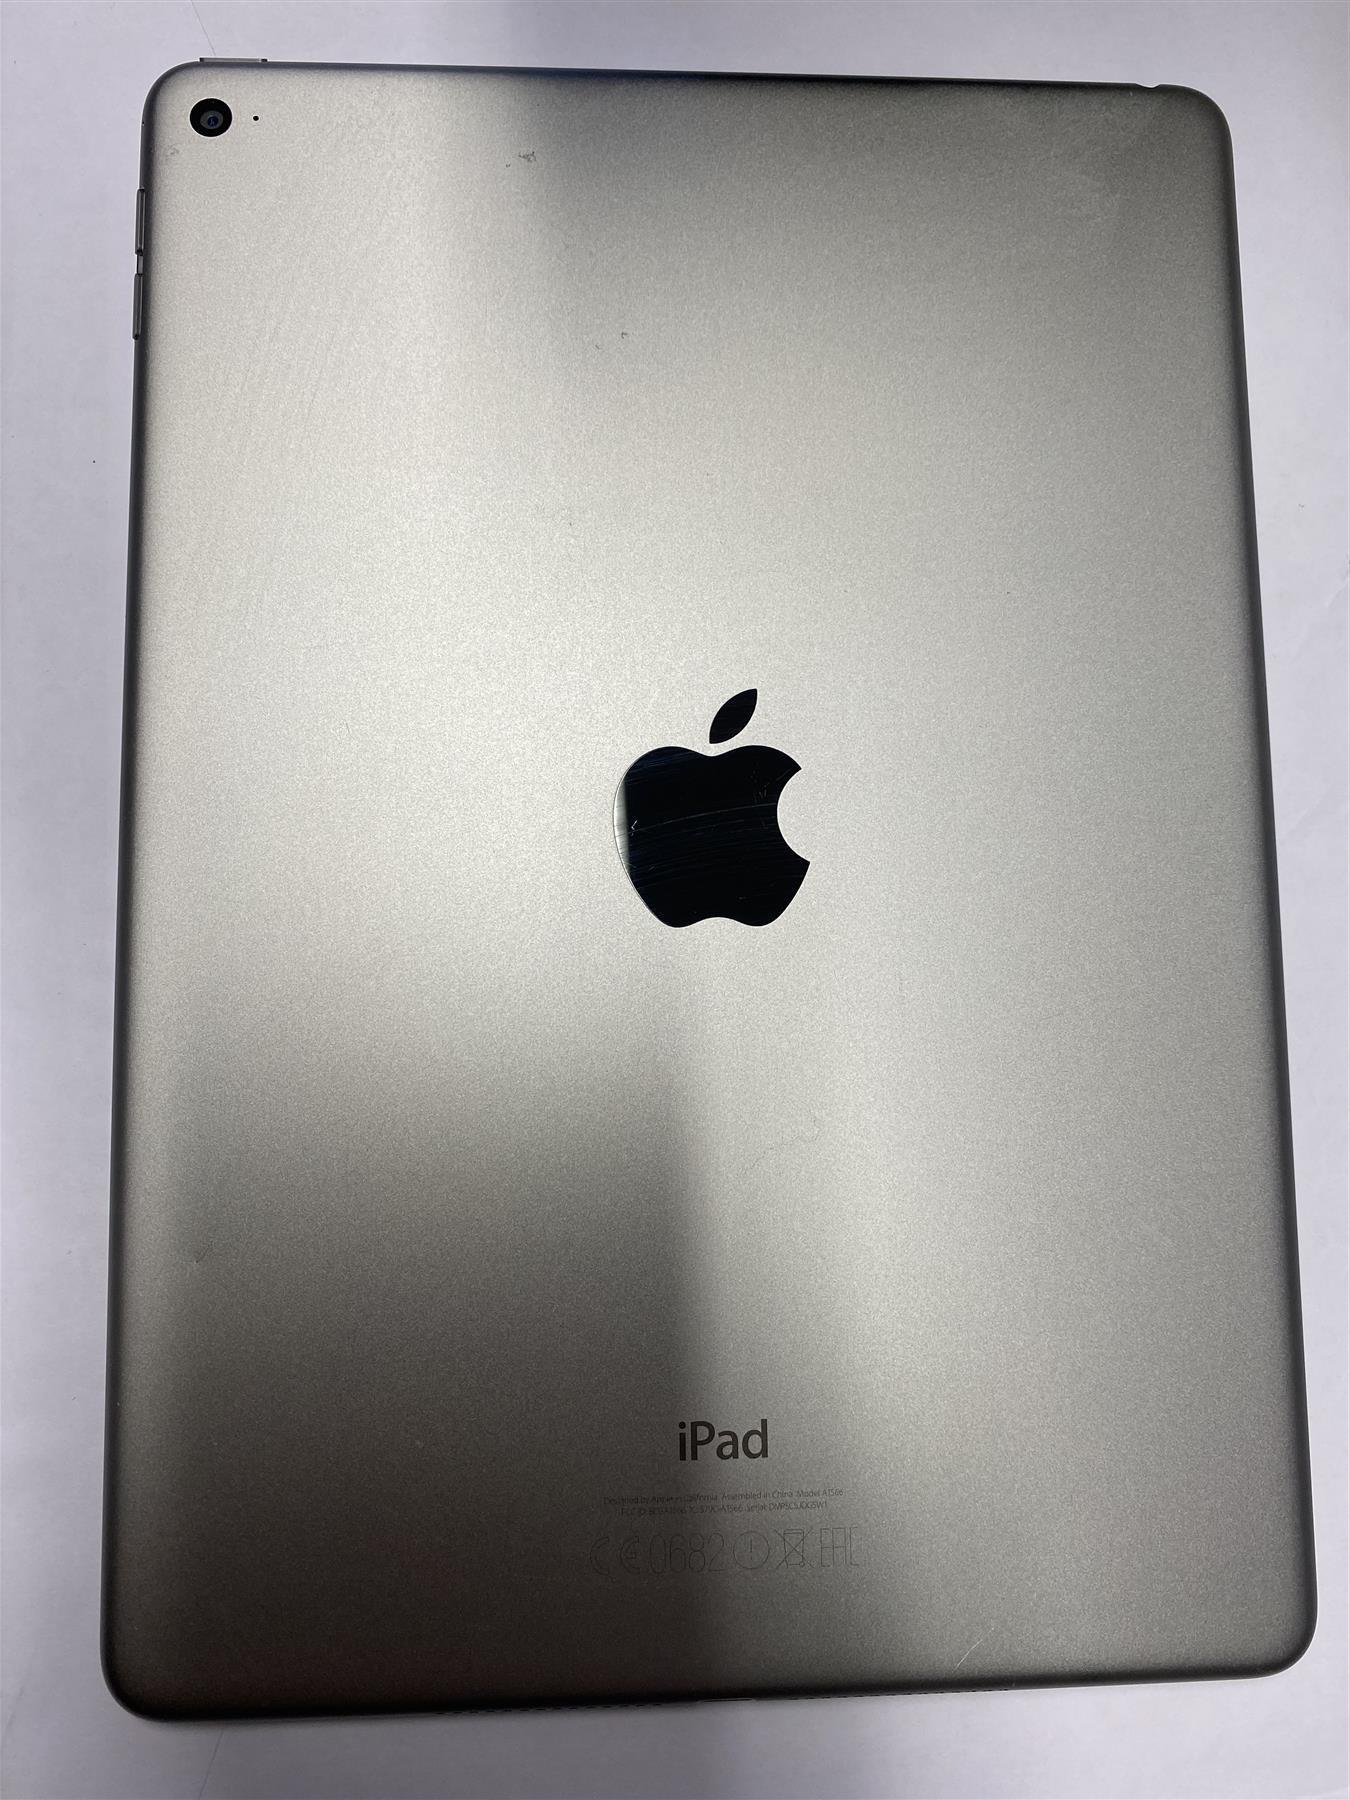 Apple iPad Air 2 128GB WiFi Space Grey - Used